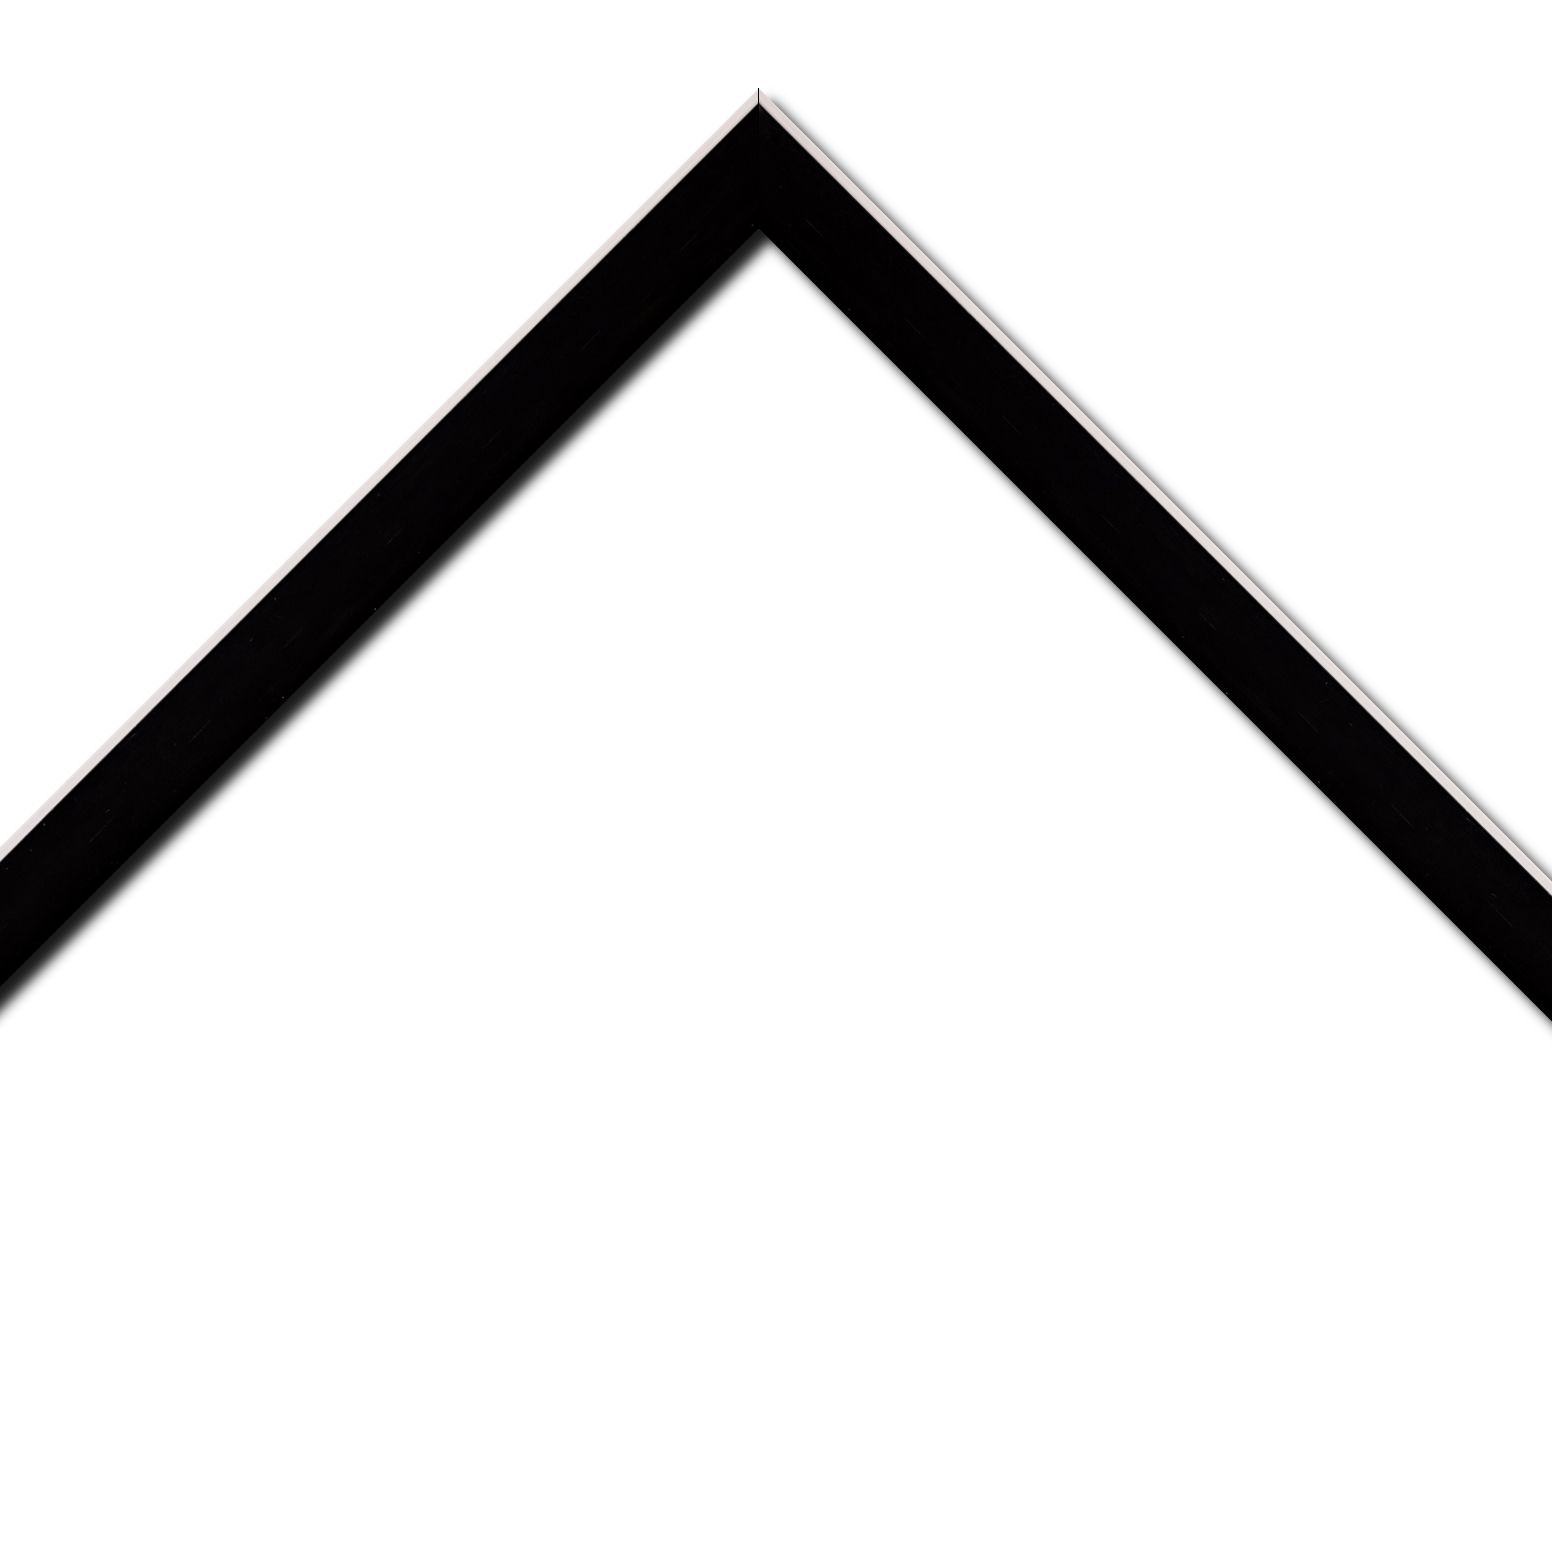 Baguette bois profil arrondi en pente plongeant largeur 2.4cm couleur noir satiné,veine du bois  apparent (pin) , angle du cadre extérieur filet argent chromé